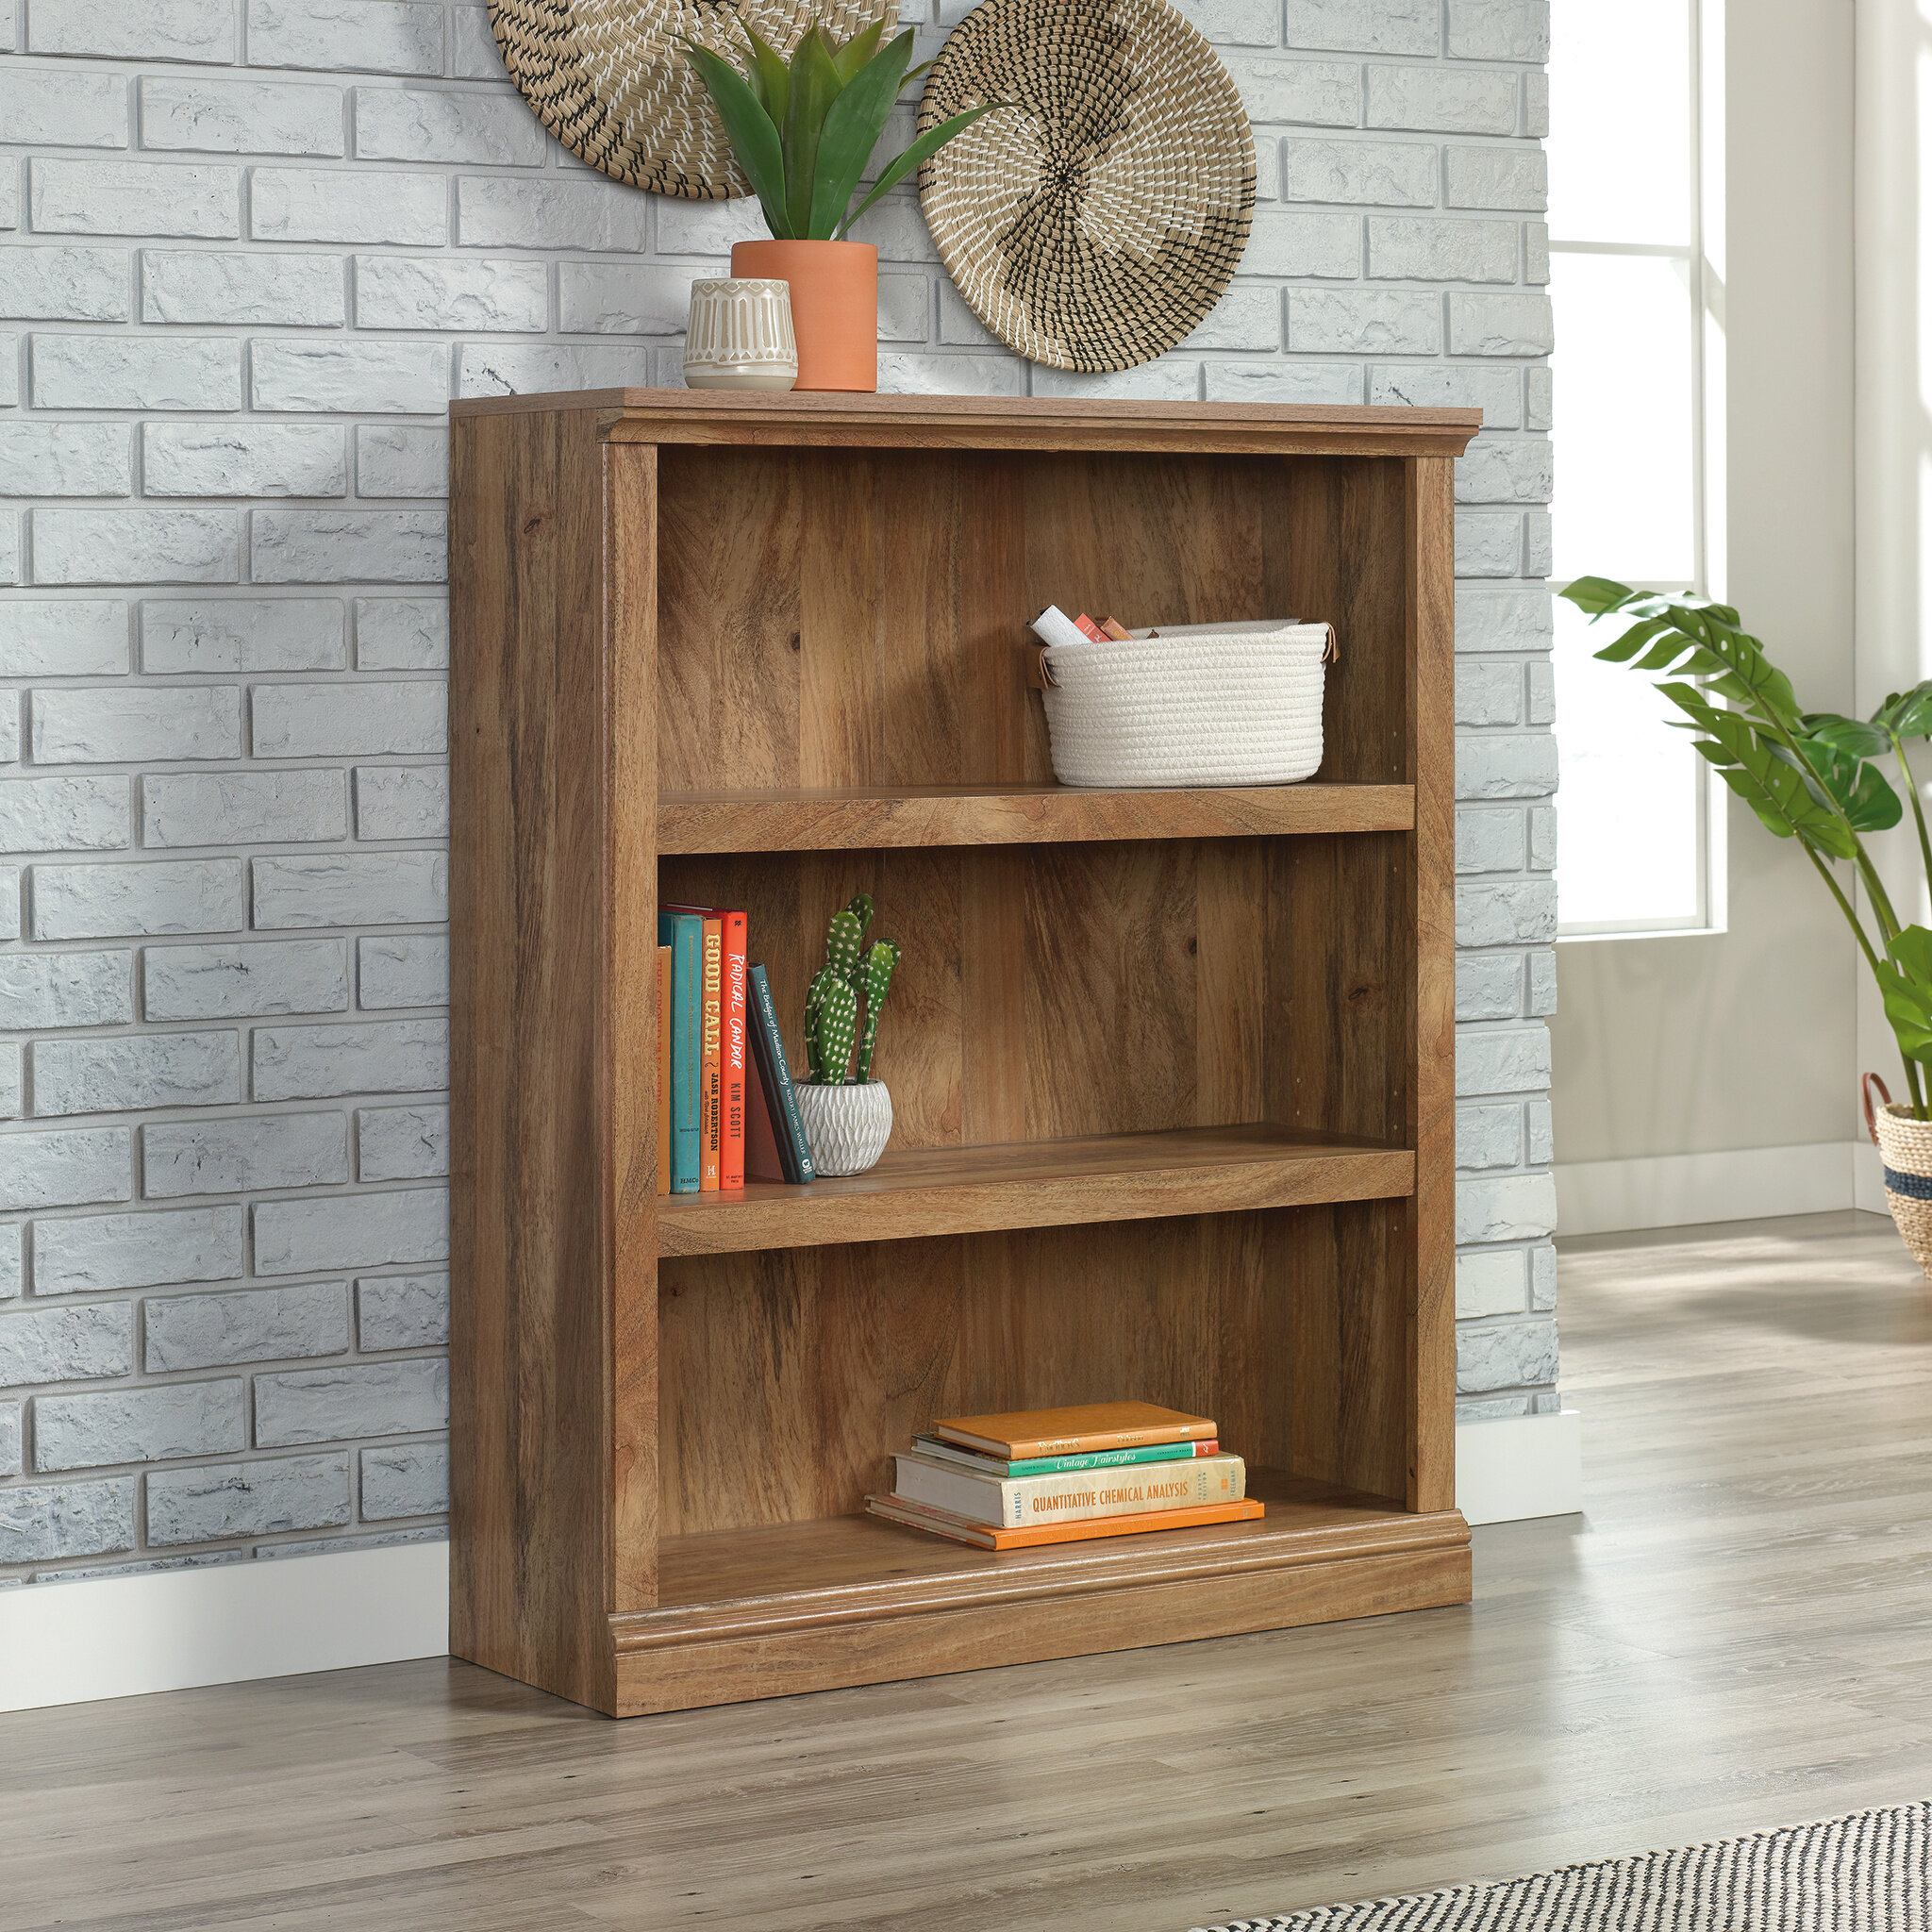 White GOLDFAN Bookcase Bookshelf Steel Shelving Unit Display Free Standing Shelves for Living Room 